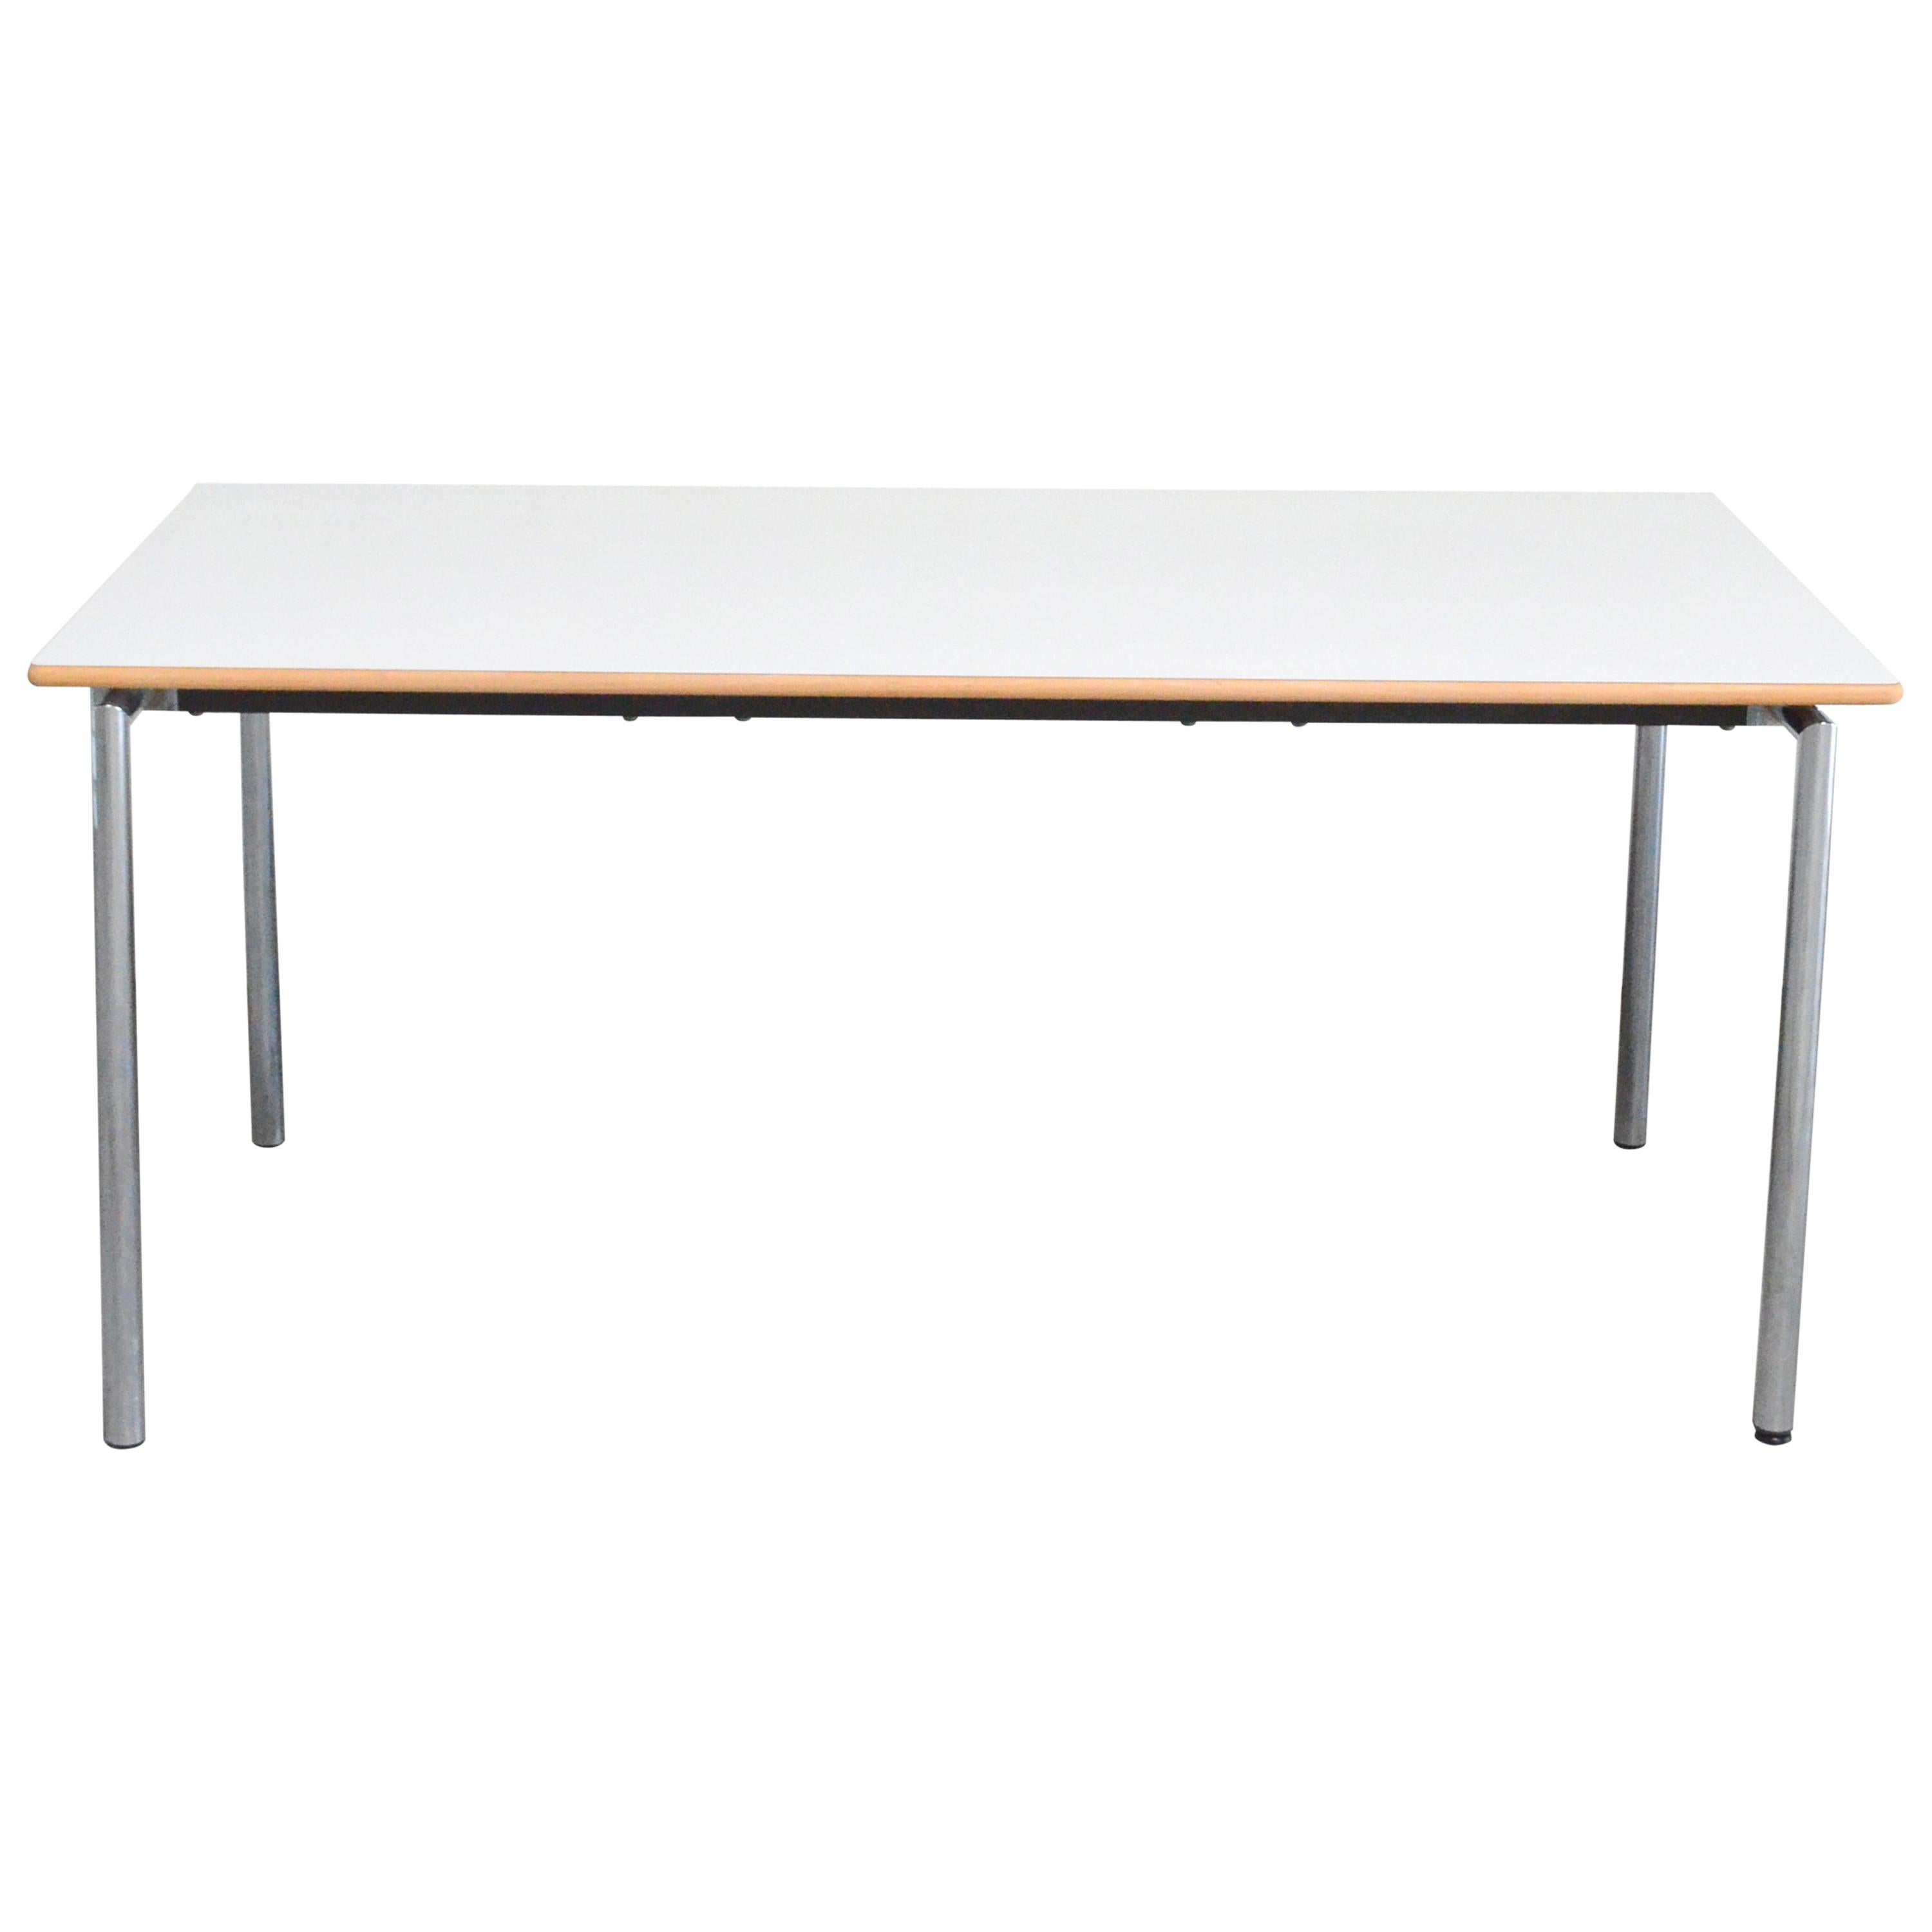 Flex Office Folding Desk Table Søren Nielsen &Thore Lassen Randers Danish Modern For Sale